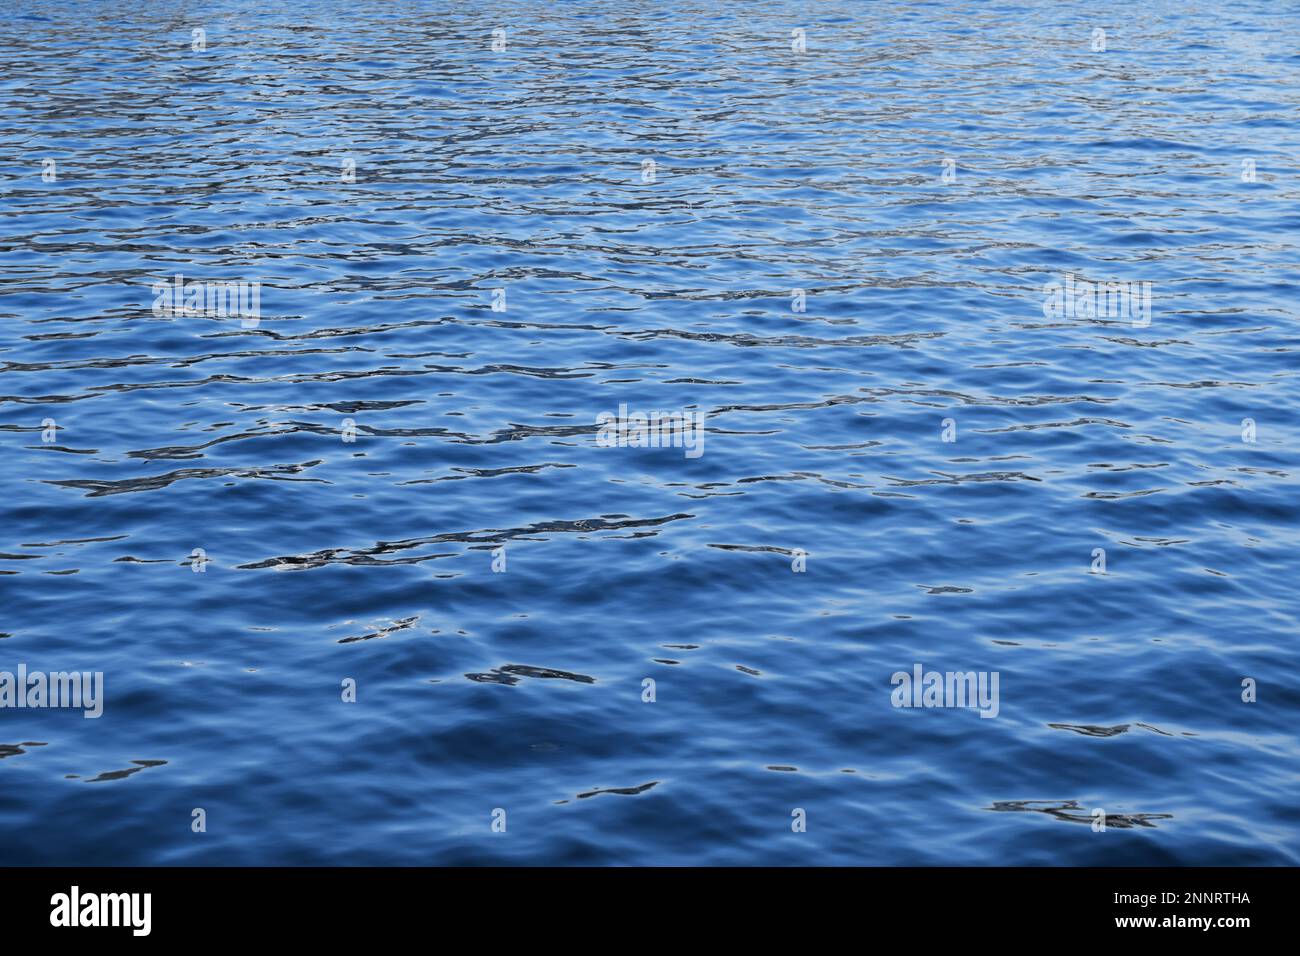 fond bleu foncé d'eau de mer avec des ondulations - motif de vagues naturelles de l'océan - fond plein cadre avec espace de copie Banque D'Images